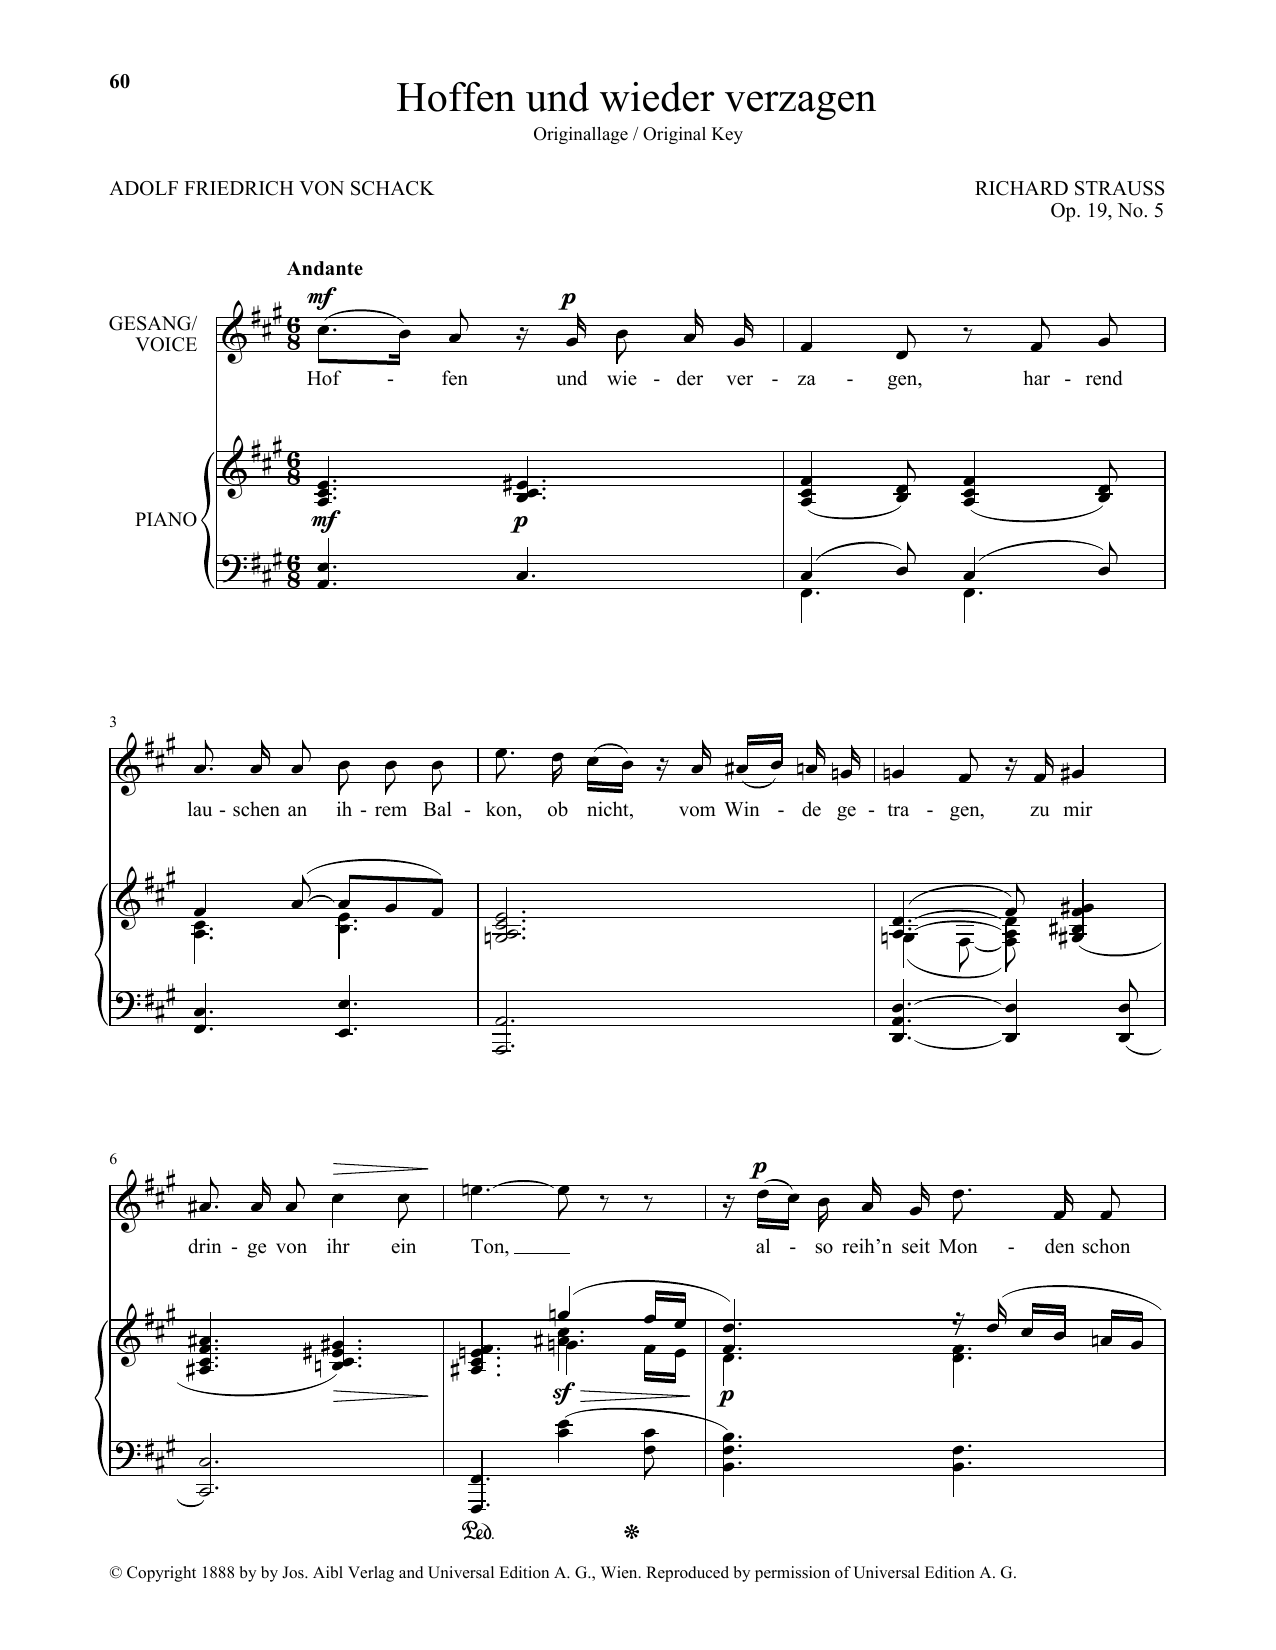 Richard Strauss Hoffen Und Wieder Verzagen (High Voice) Sheet Music Notes & Chords for Piano & Vocal - Download or Print PDF